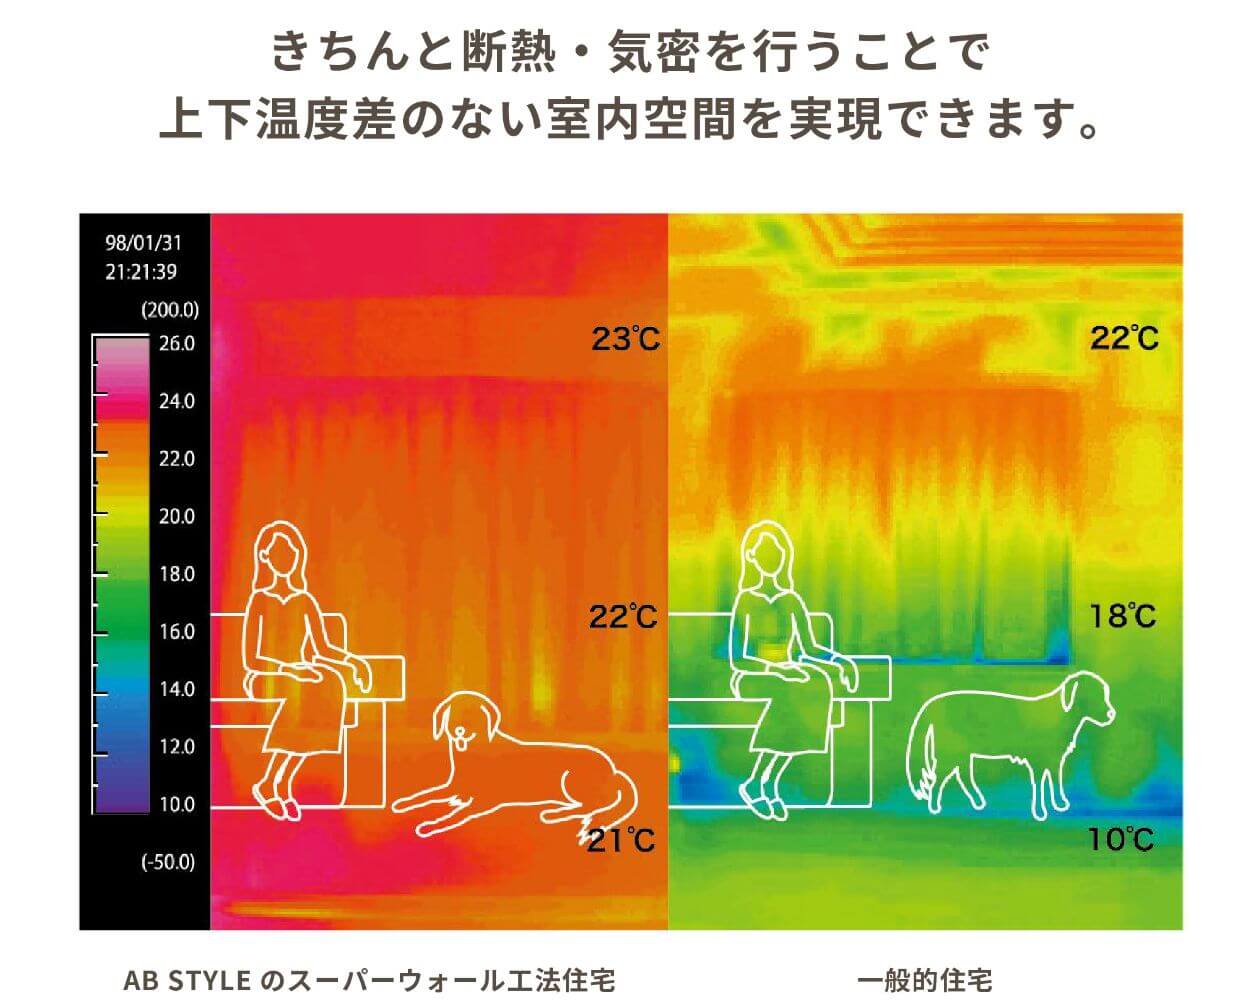 きちんと断熱・気密を行うことで上下温度差のない室内空間を実現できます。